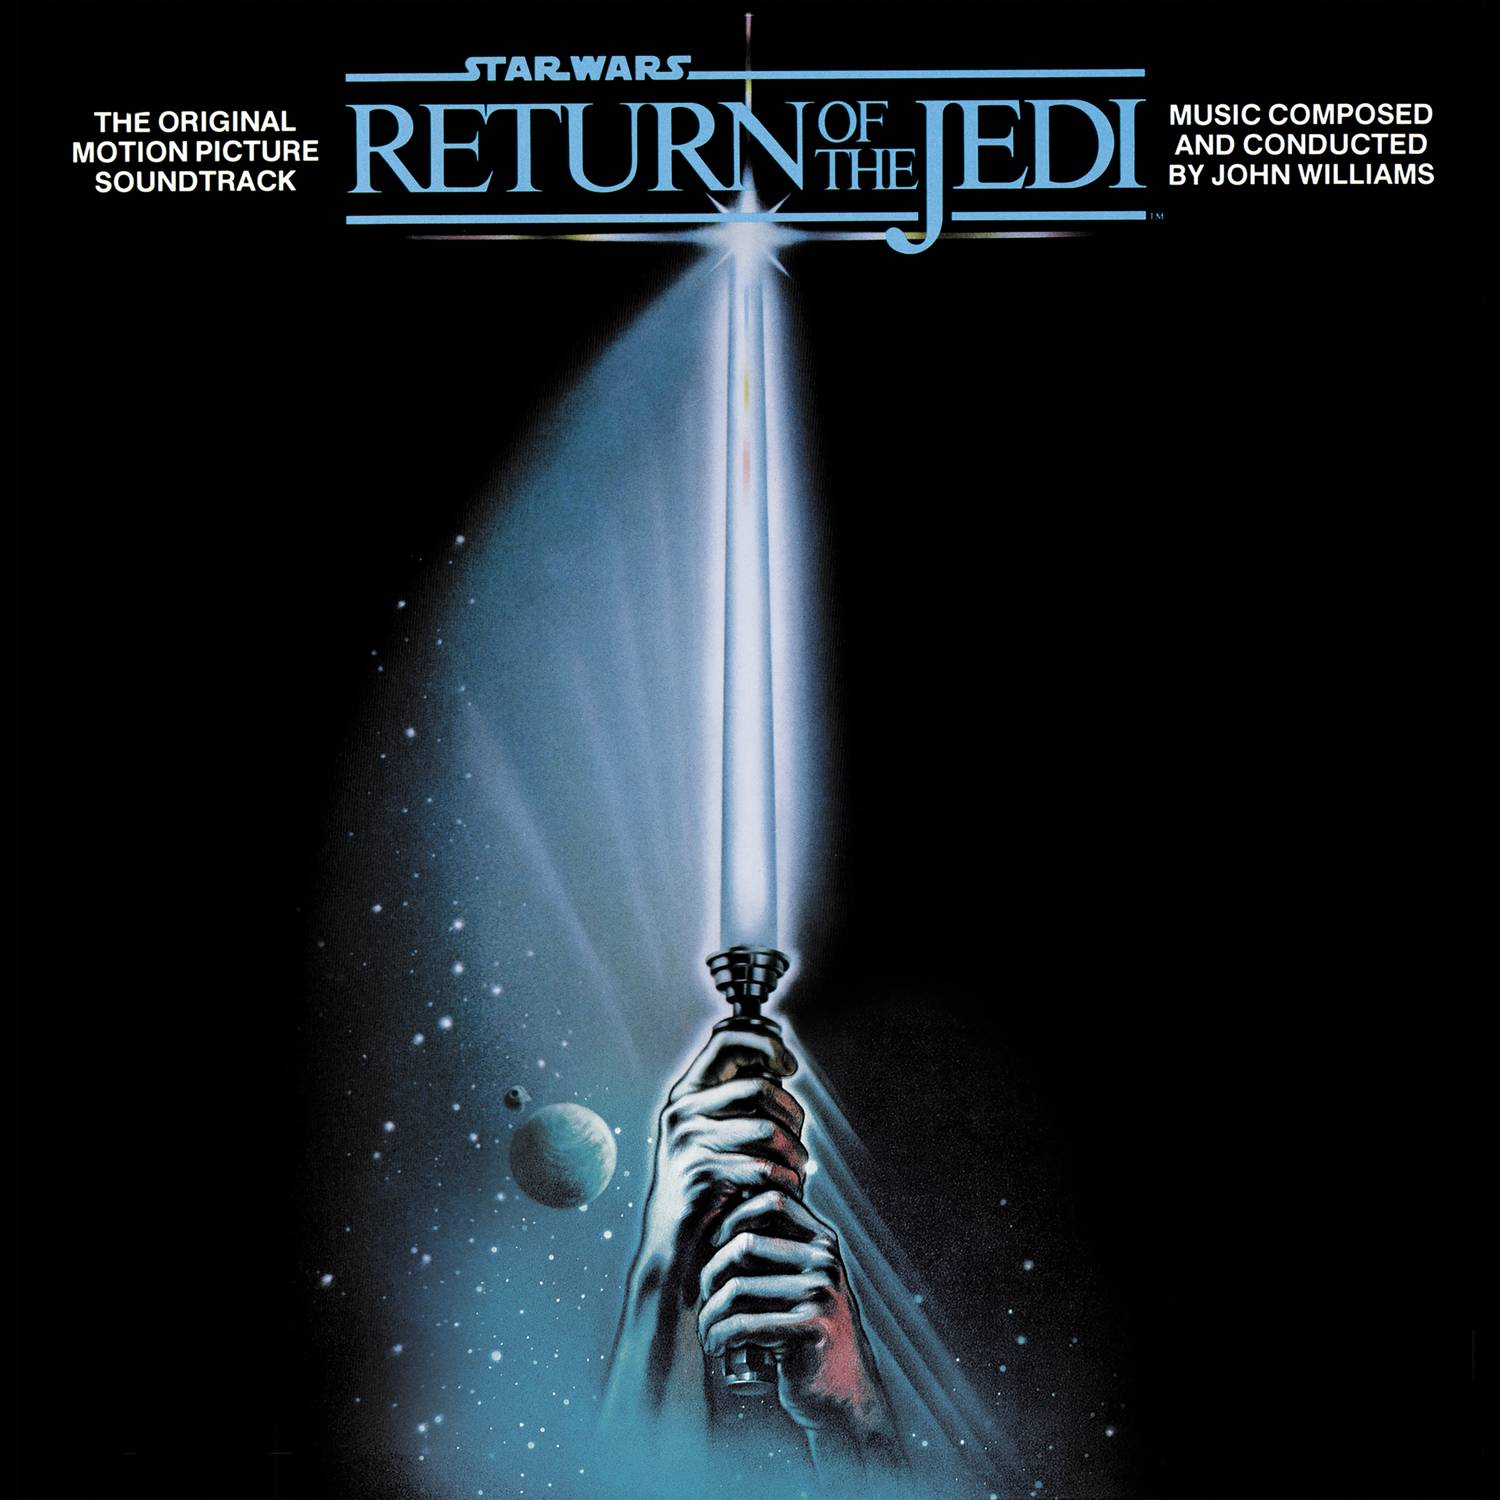 Star Wars Episode VI: Return of the Jedi (Original Motion Picture Soundtrack)